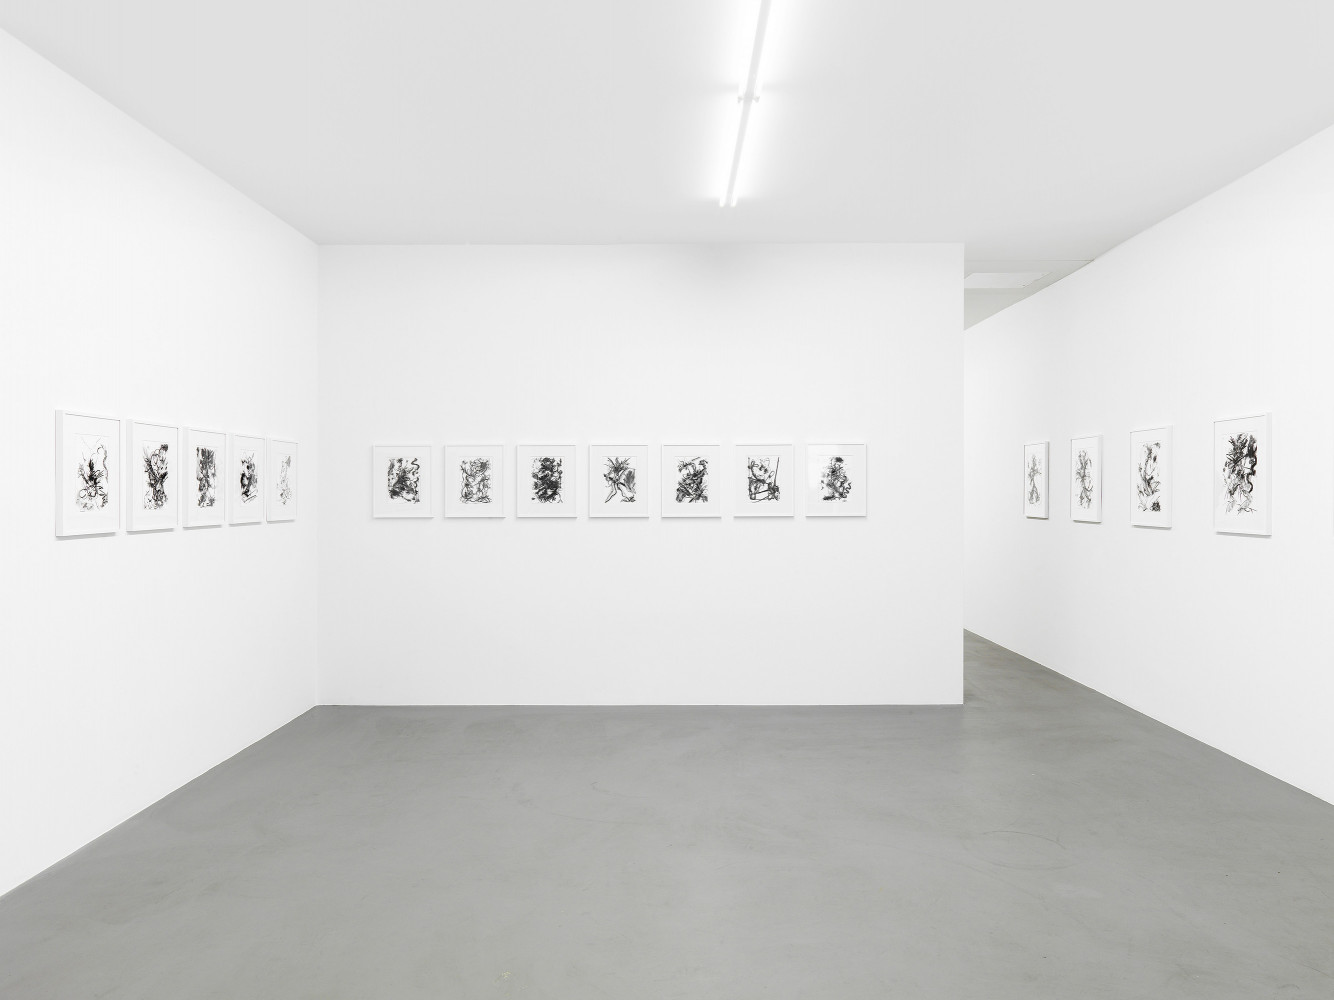 Fiona Rae, ‘Zeichnungen’, Installation view, 2014